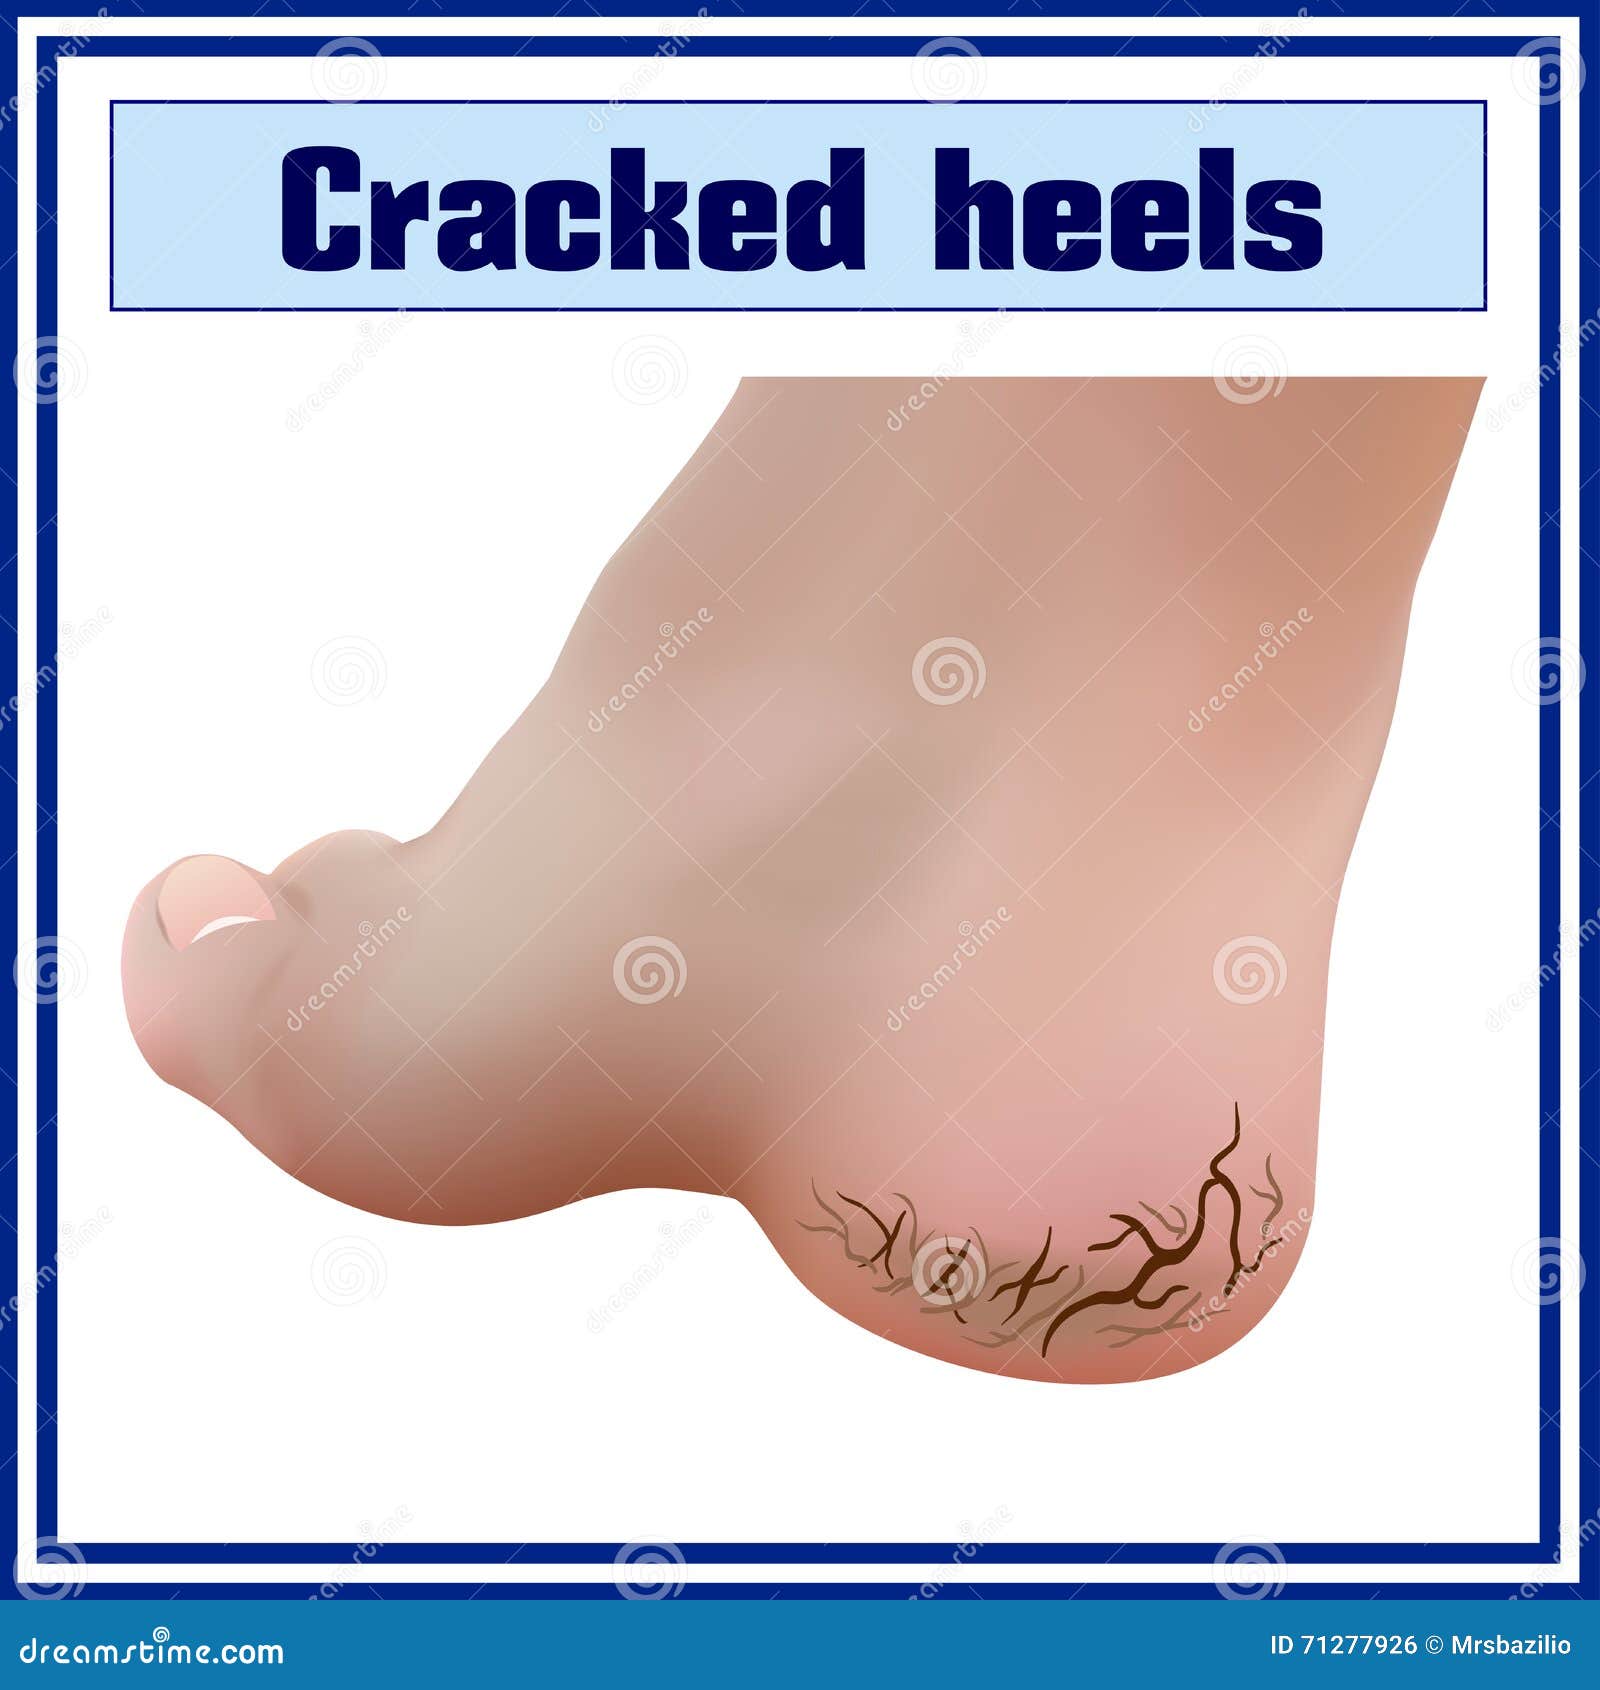 cracked heels. foot diseases. dermatology.